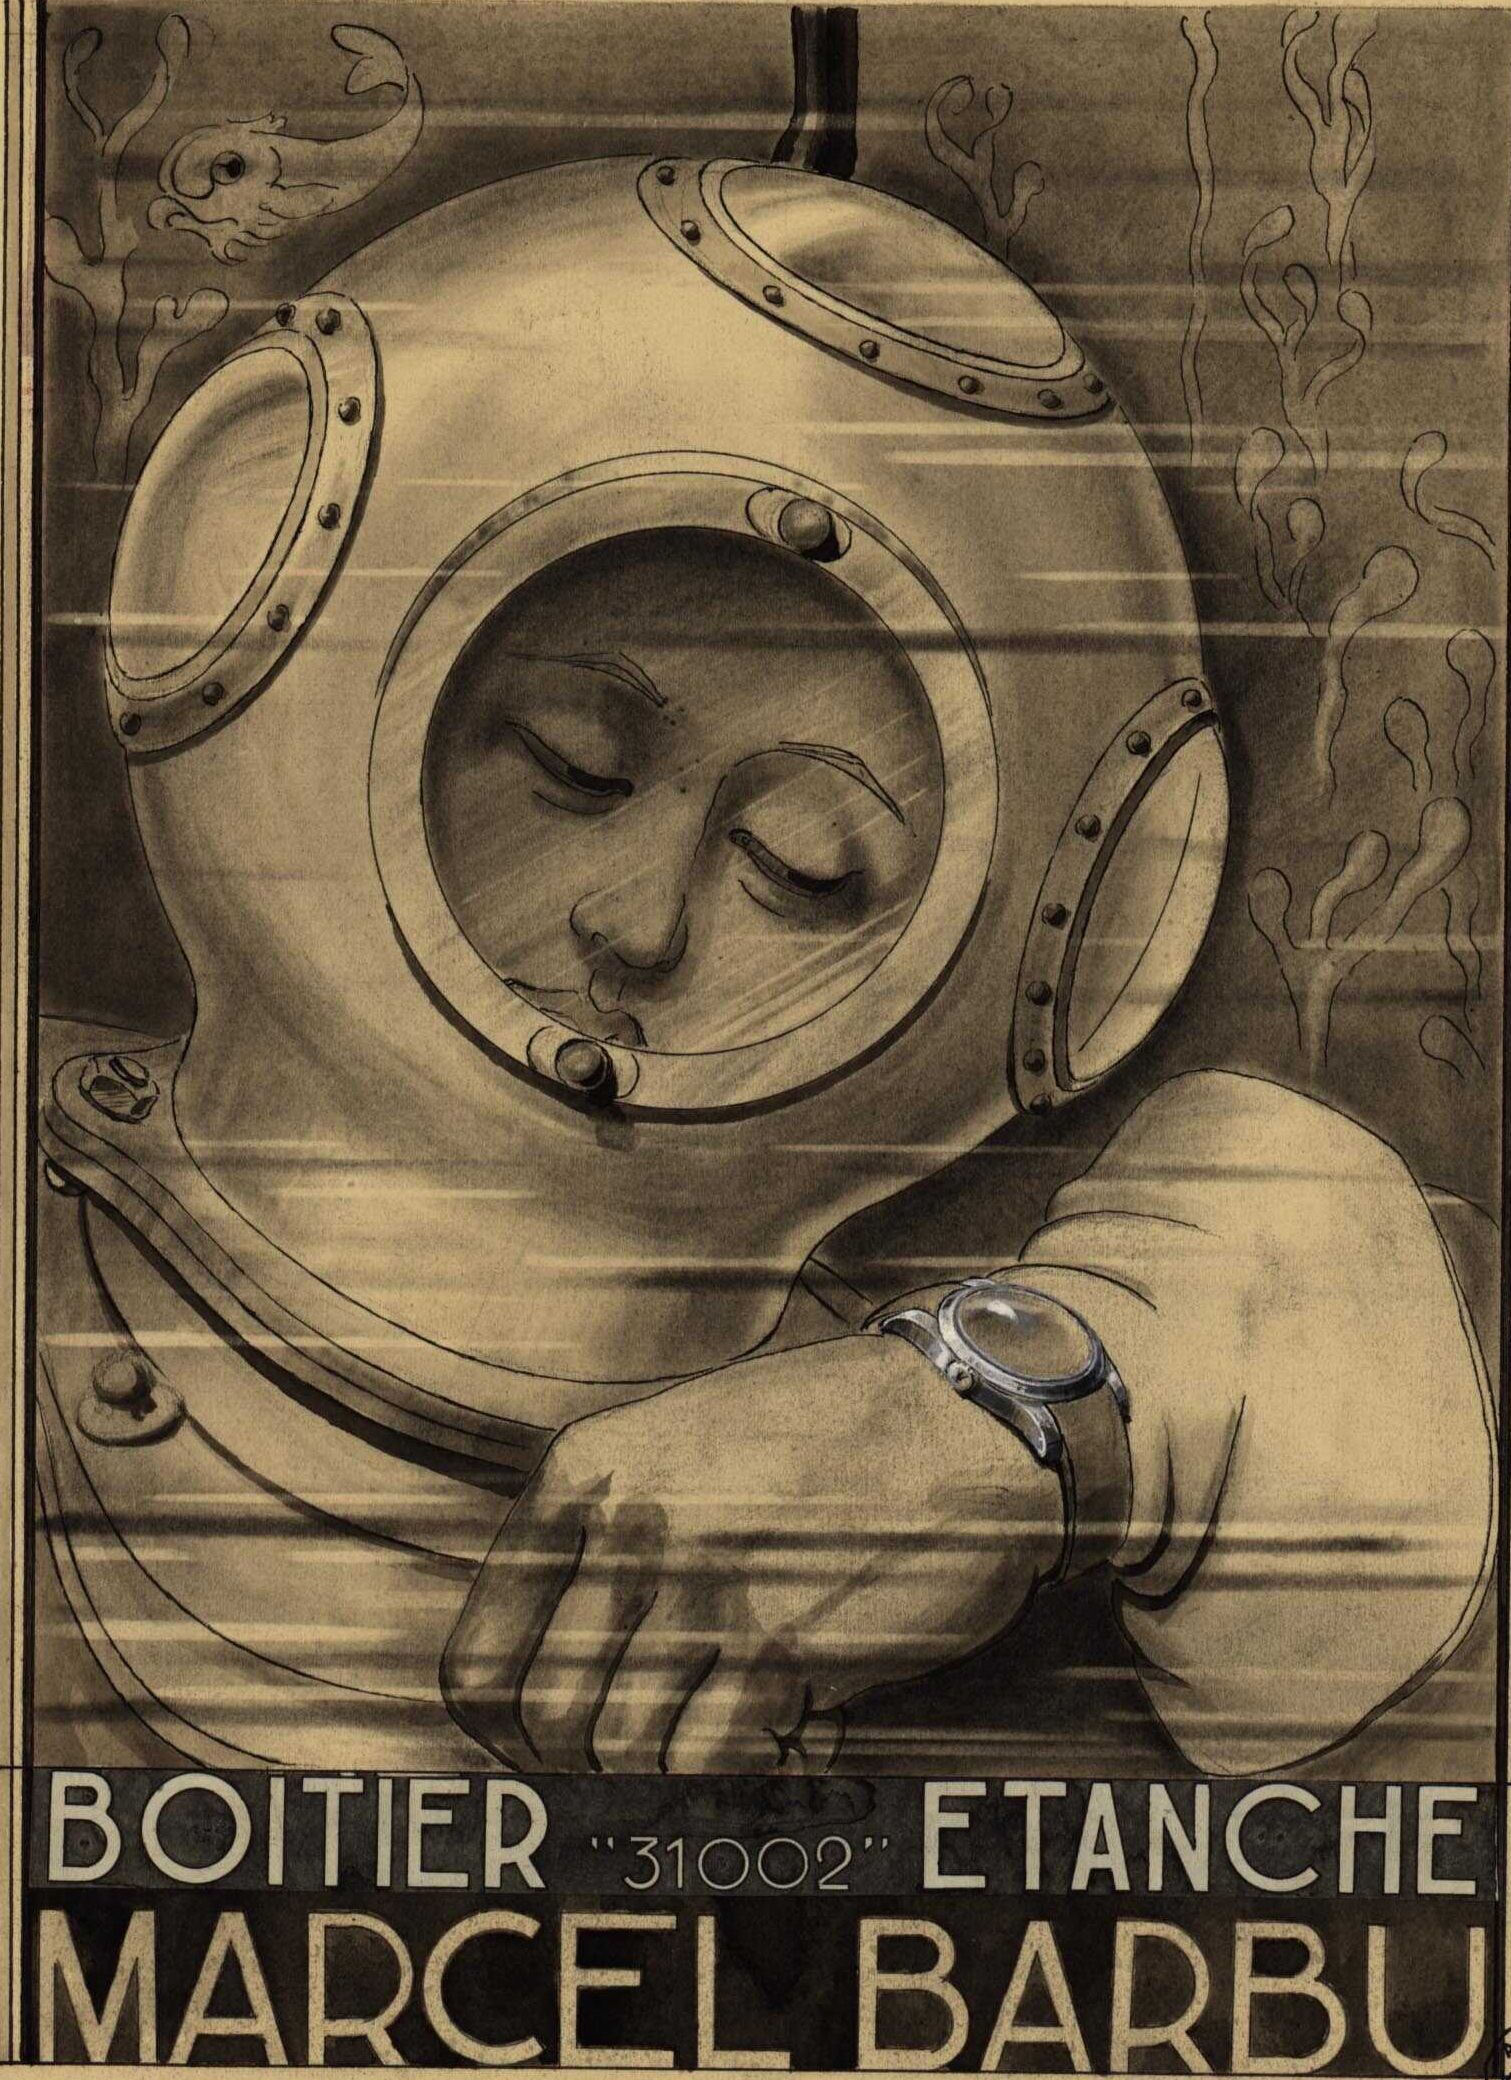 Société de montres étanches Marcel Barbu : affiche publicitaire (1938-1940, cote : 17FI/4)